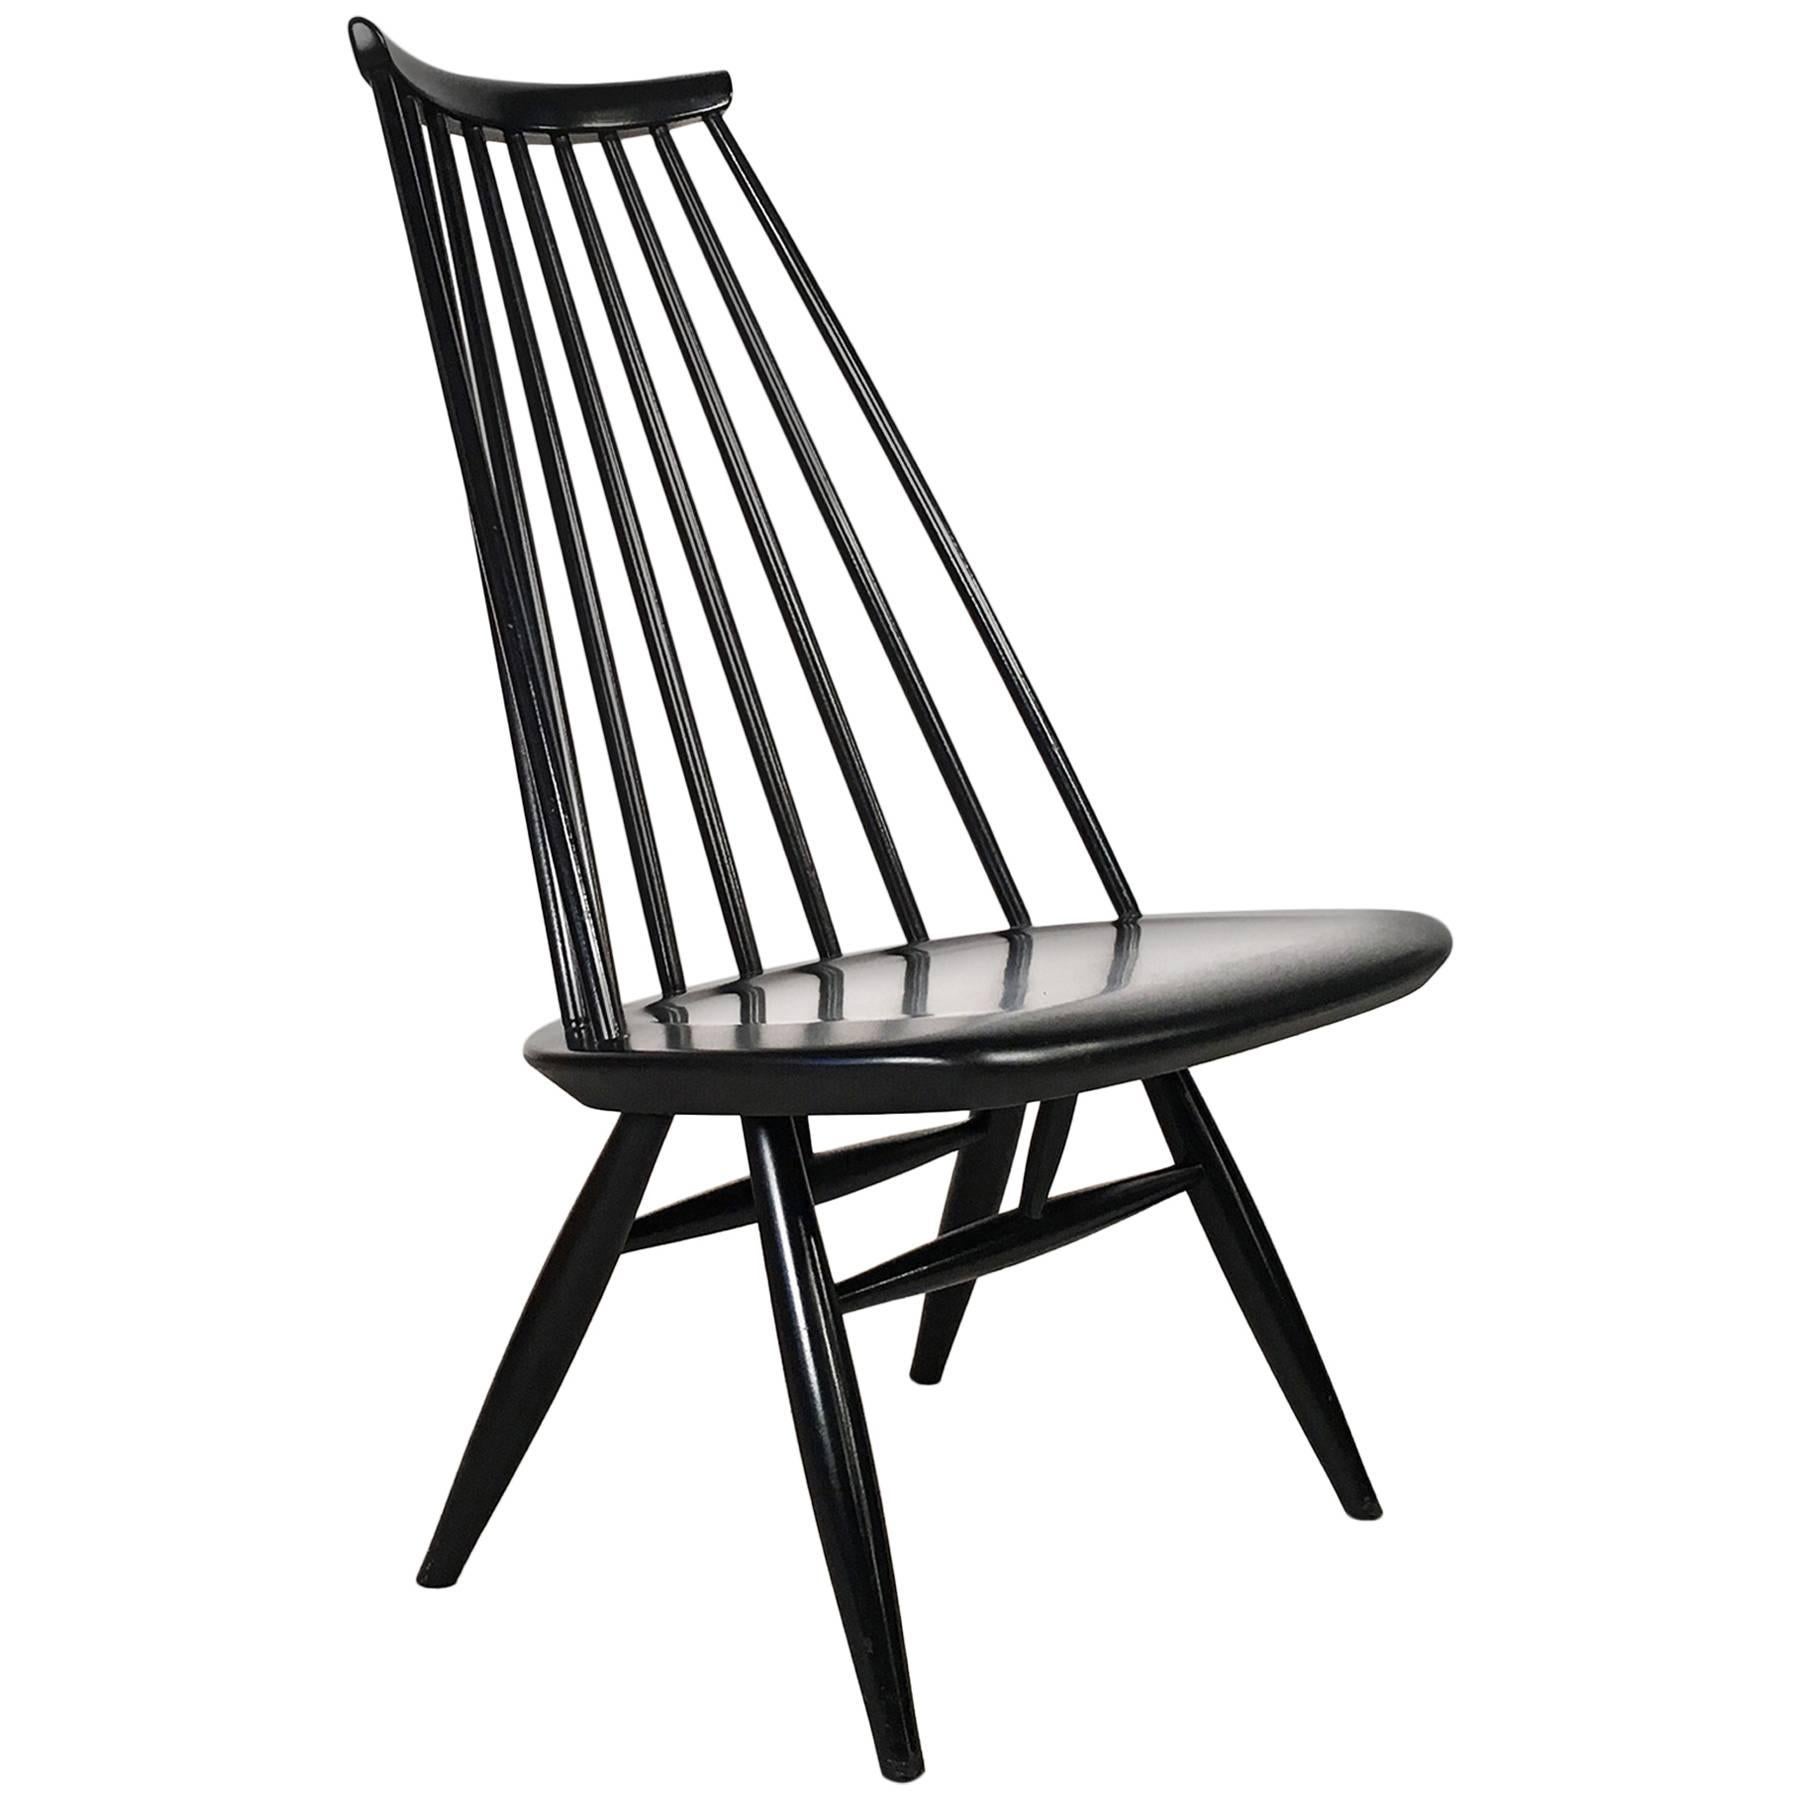 Mademoiselle Chair by Ilmari Tapiovaara for Asko